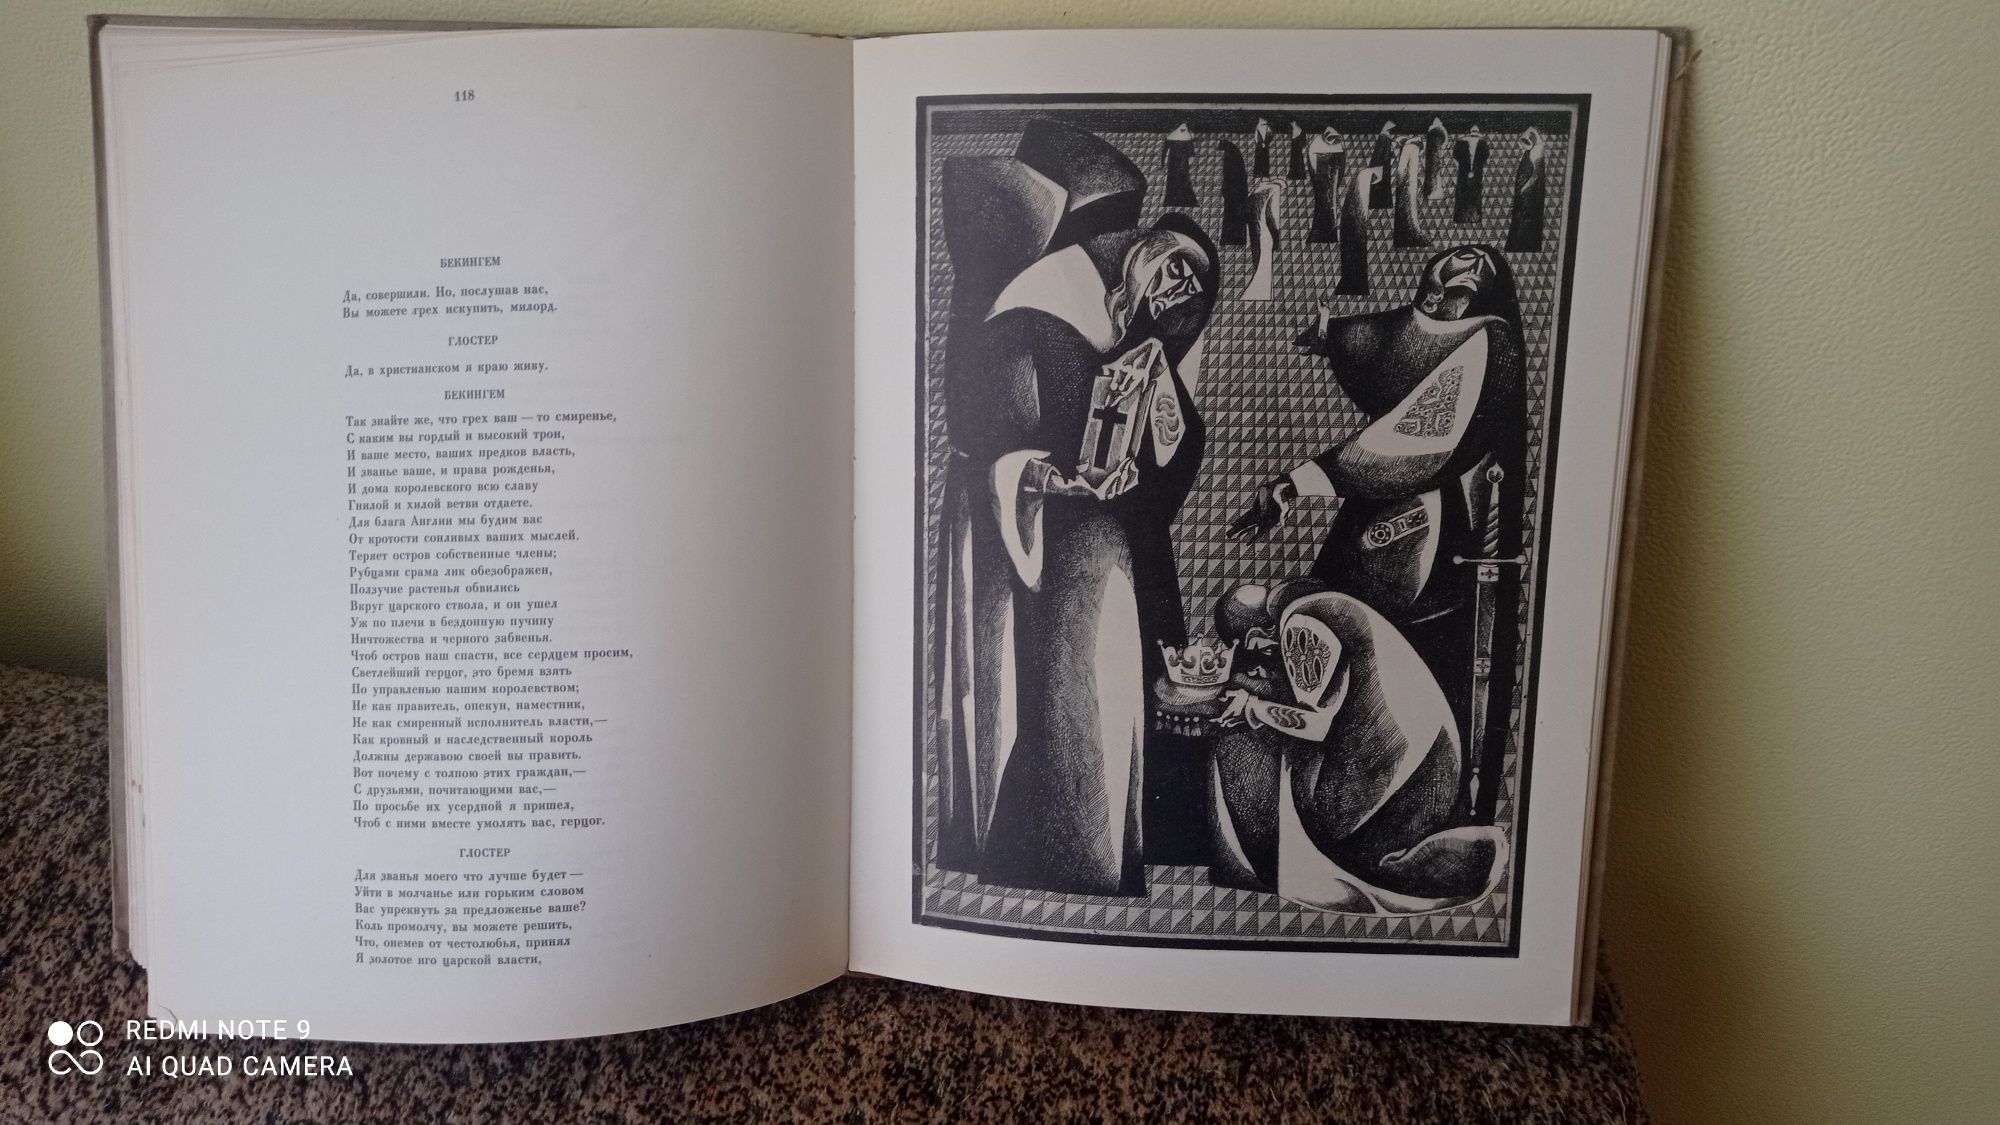 Уильям Шекспир Ричард ||| худ Волович  1971 год изд.